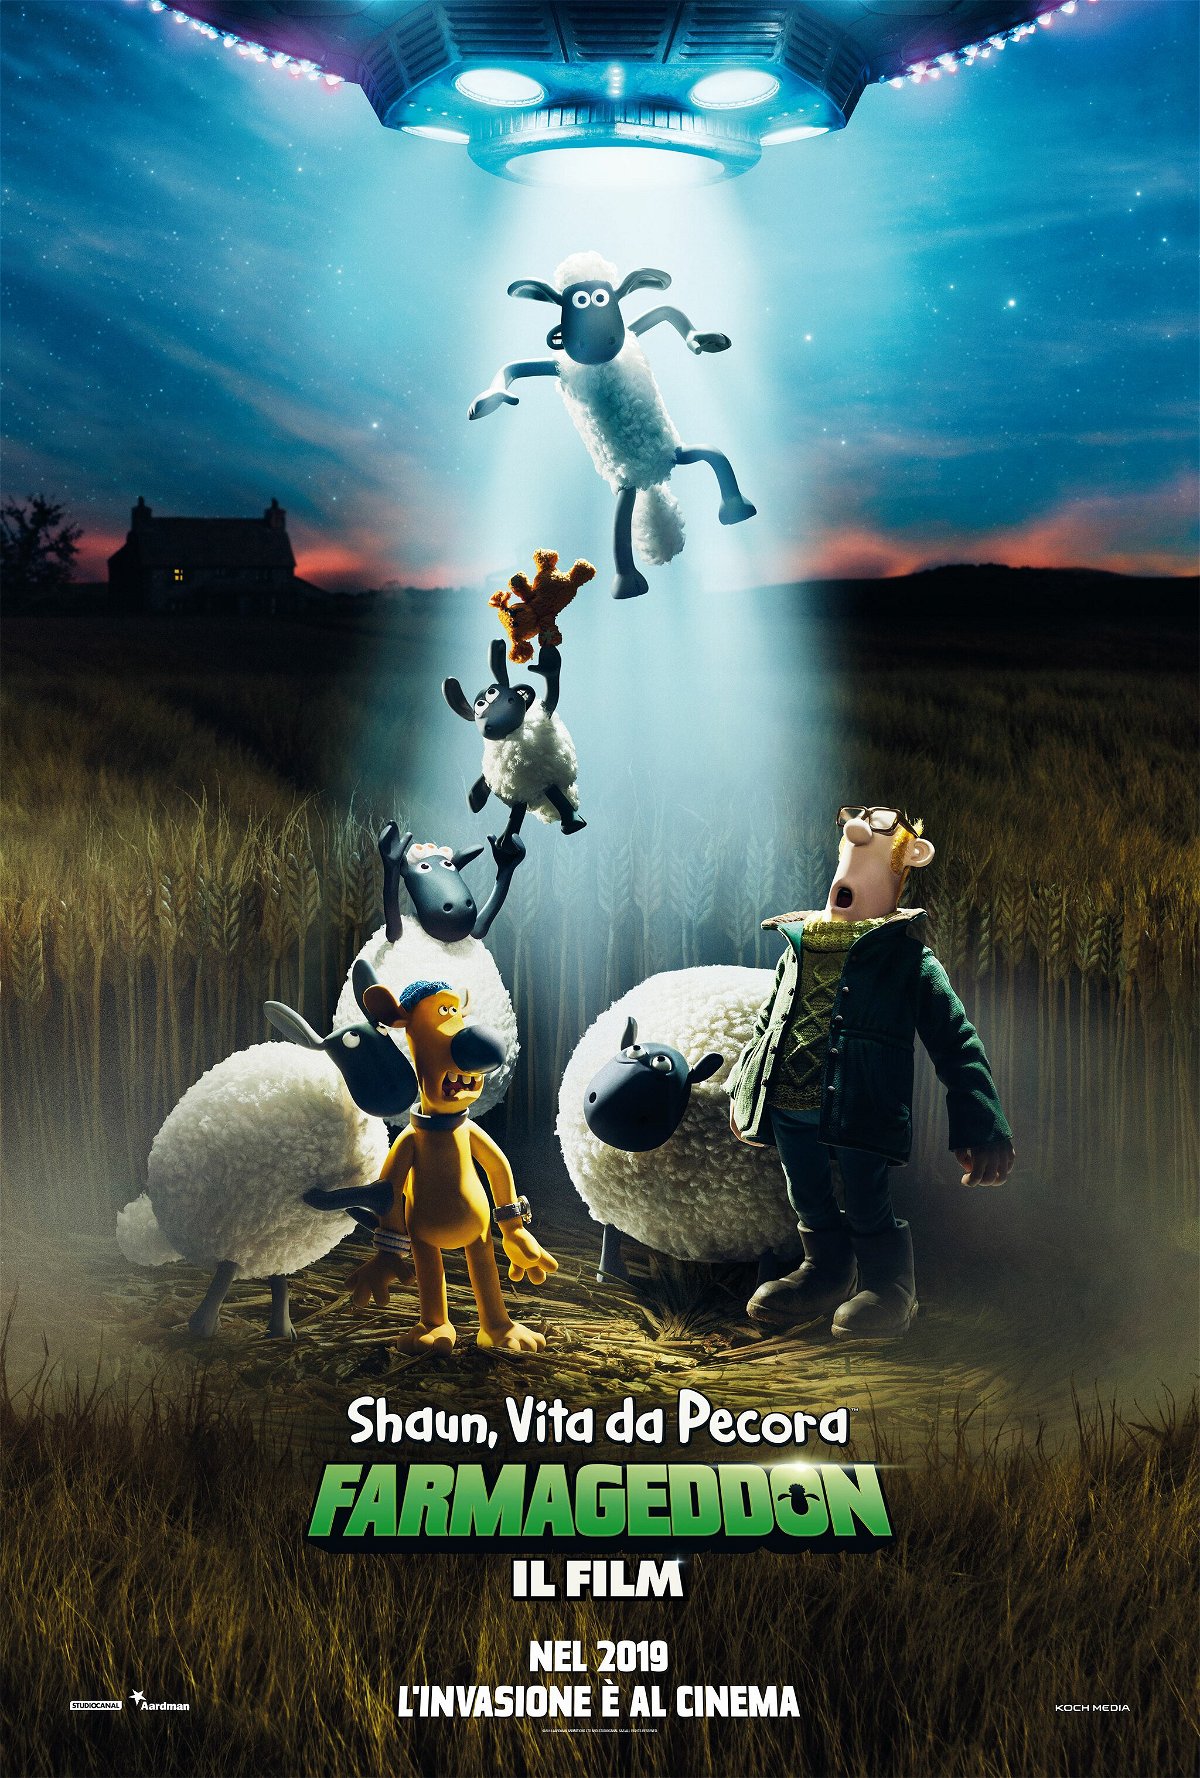 Il teaser poster di Shaun, vita da pecora - Farmageddon il film